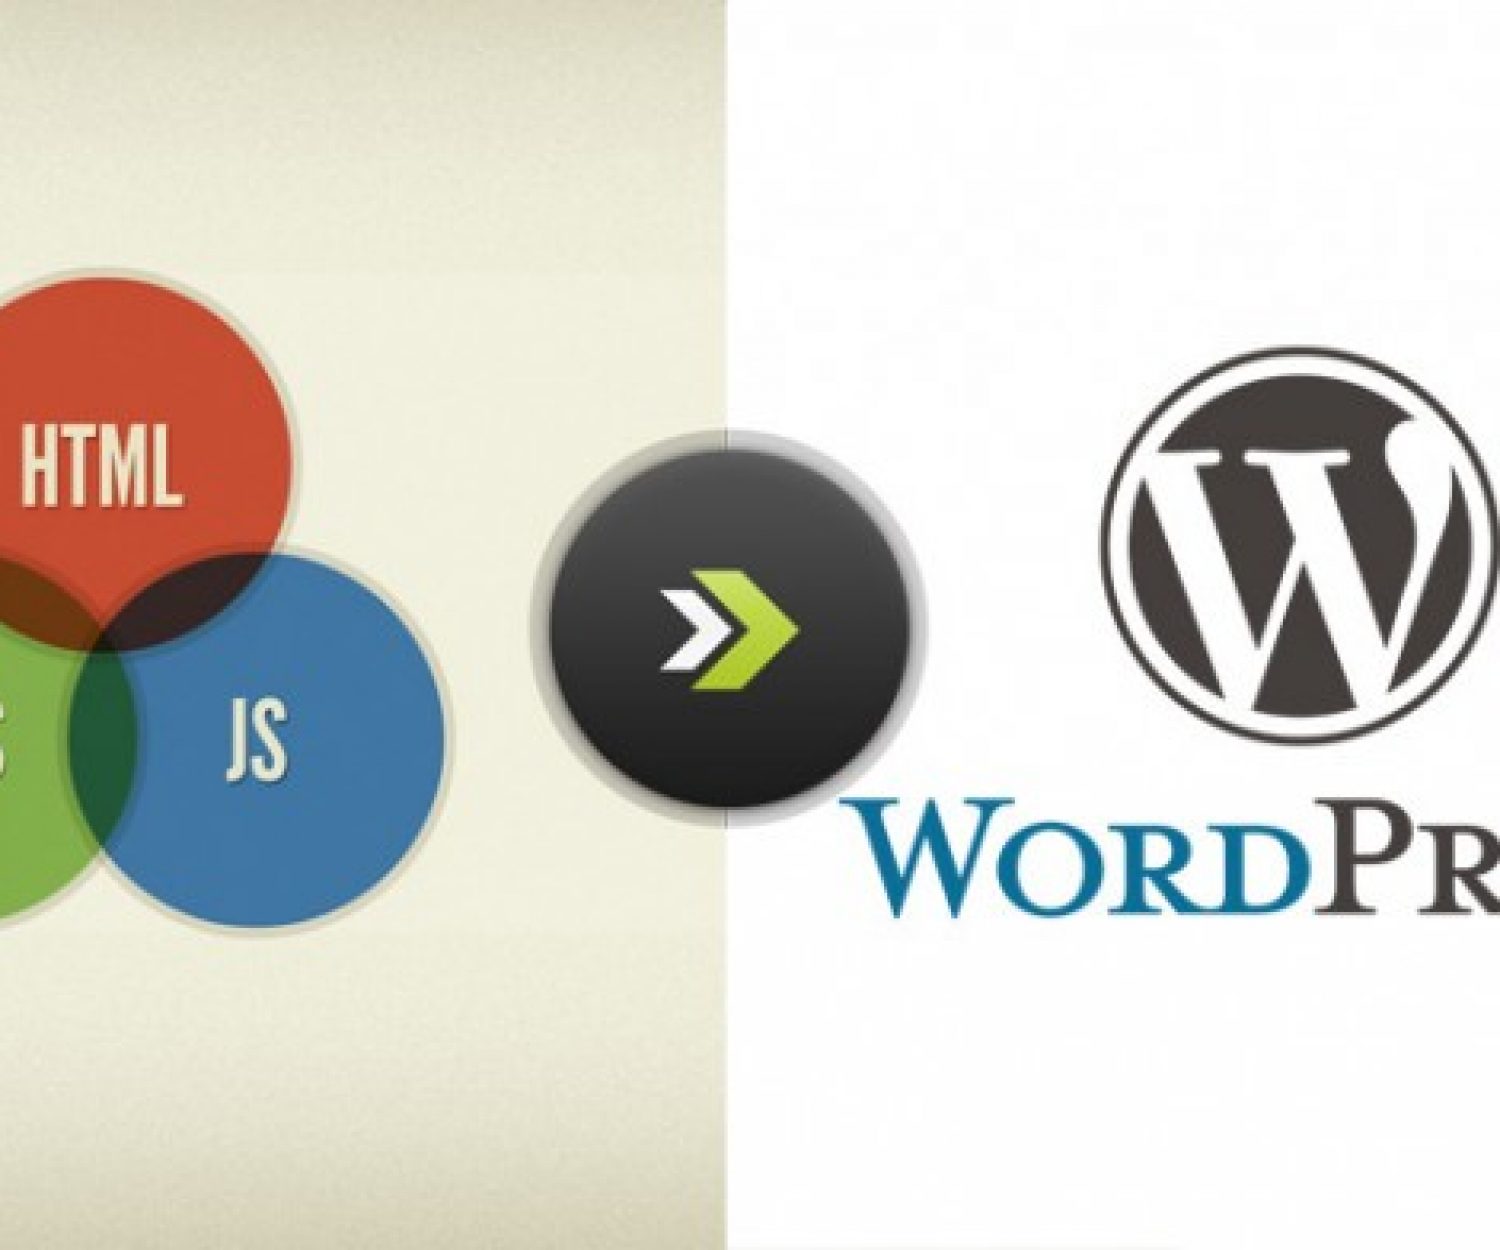 Ips wordpress. WORDPRESS. WORDPRESS html. Современный стиль WORDPRESS логотип. Html web WORDPRESS.